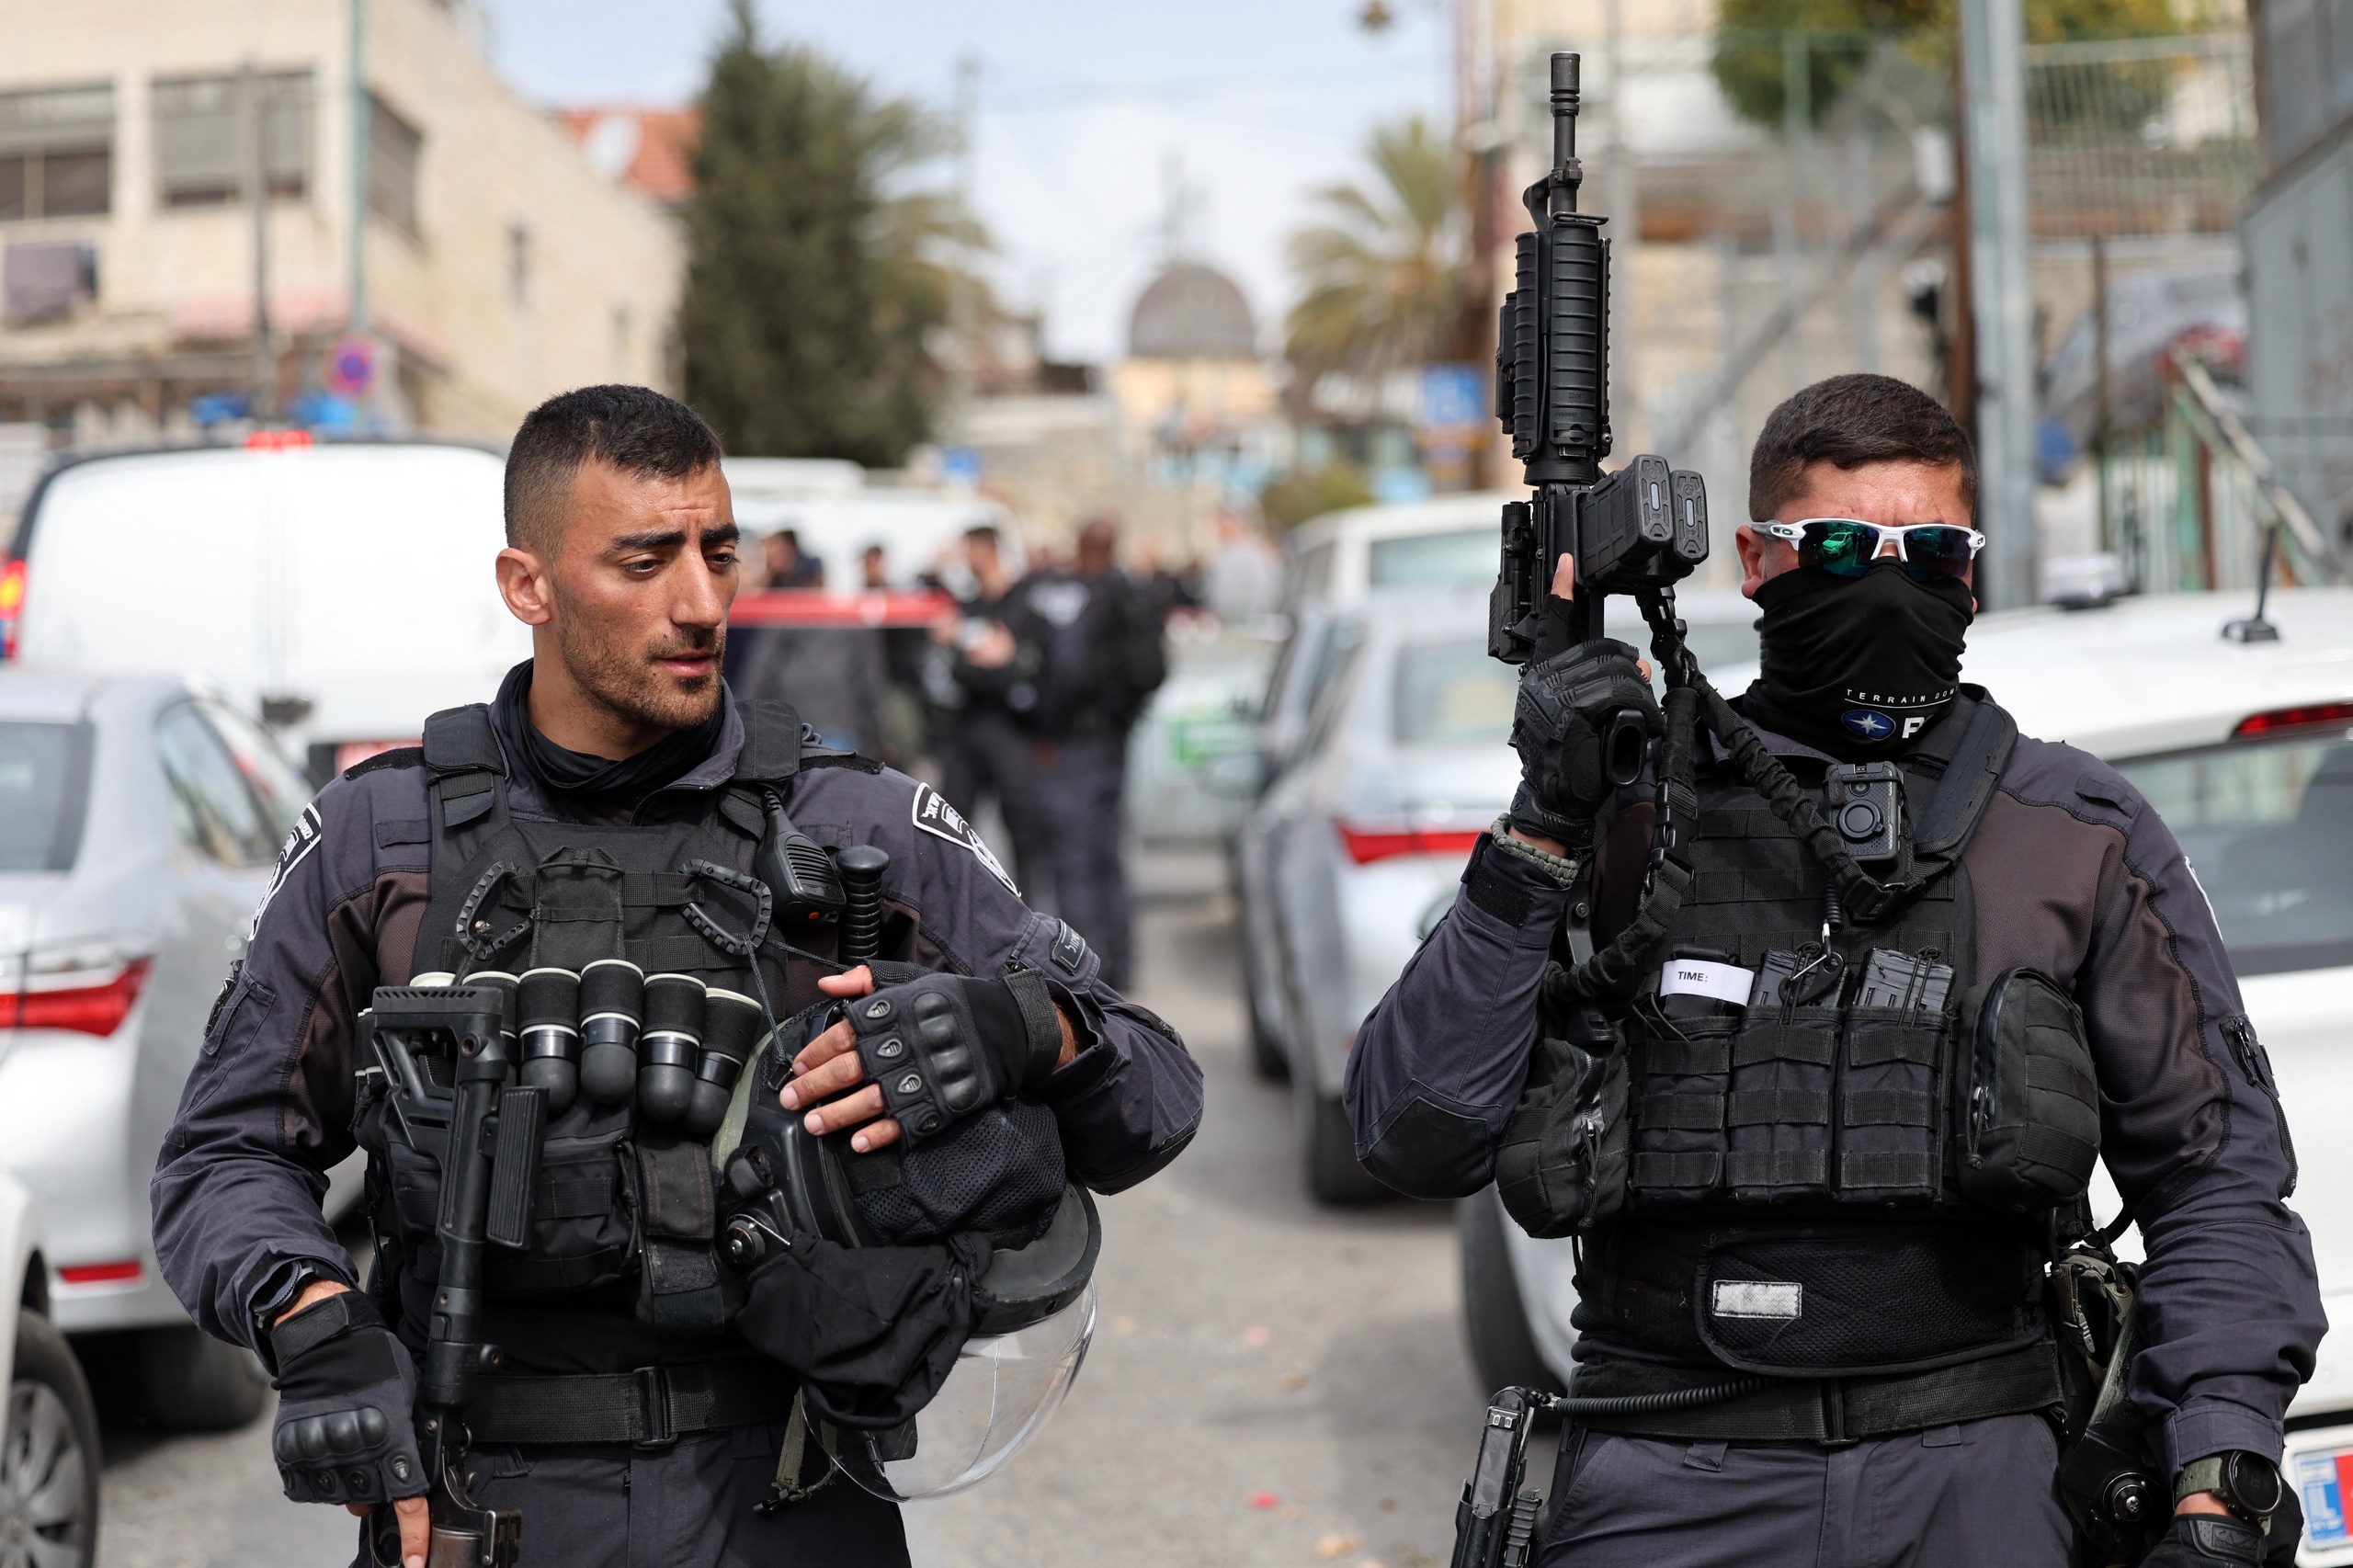 Israël versterkt de aanwezigheid van zijn troepen op de Westelijke Jordaanoever als reactie op twee schietpartijen in Oost-Jeruzalem. Een Palestijnse man (21) doodde daar vrijdag zeven mensen. Zaterdag verwondde een 13-jarige jongen, eveneens een Palestijn, twee mensen.